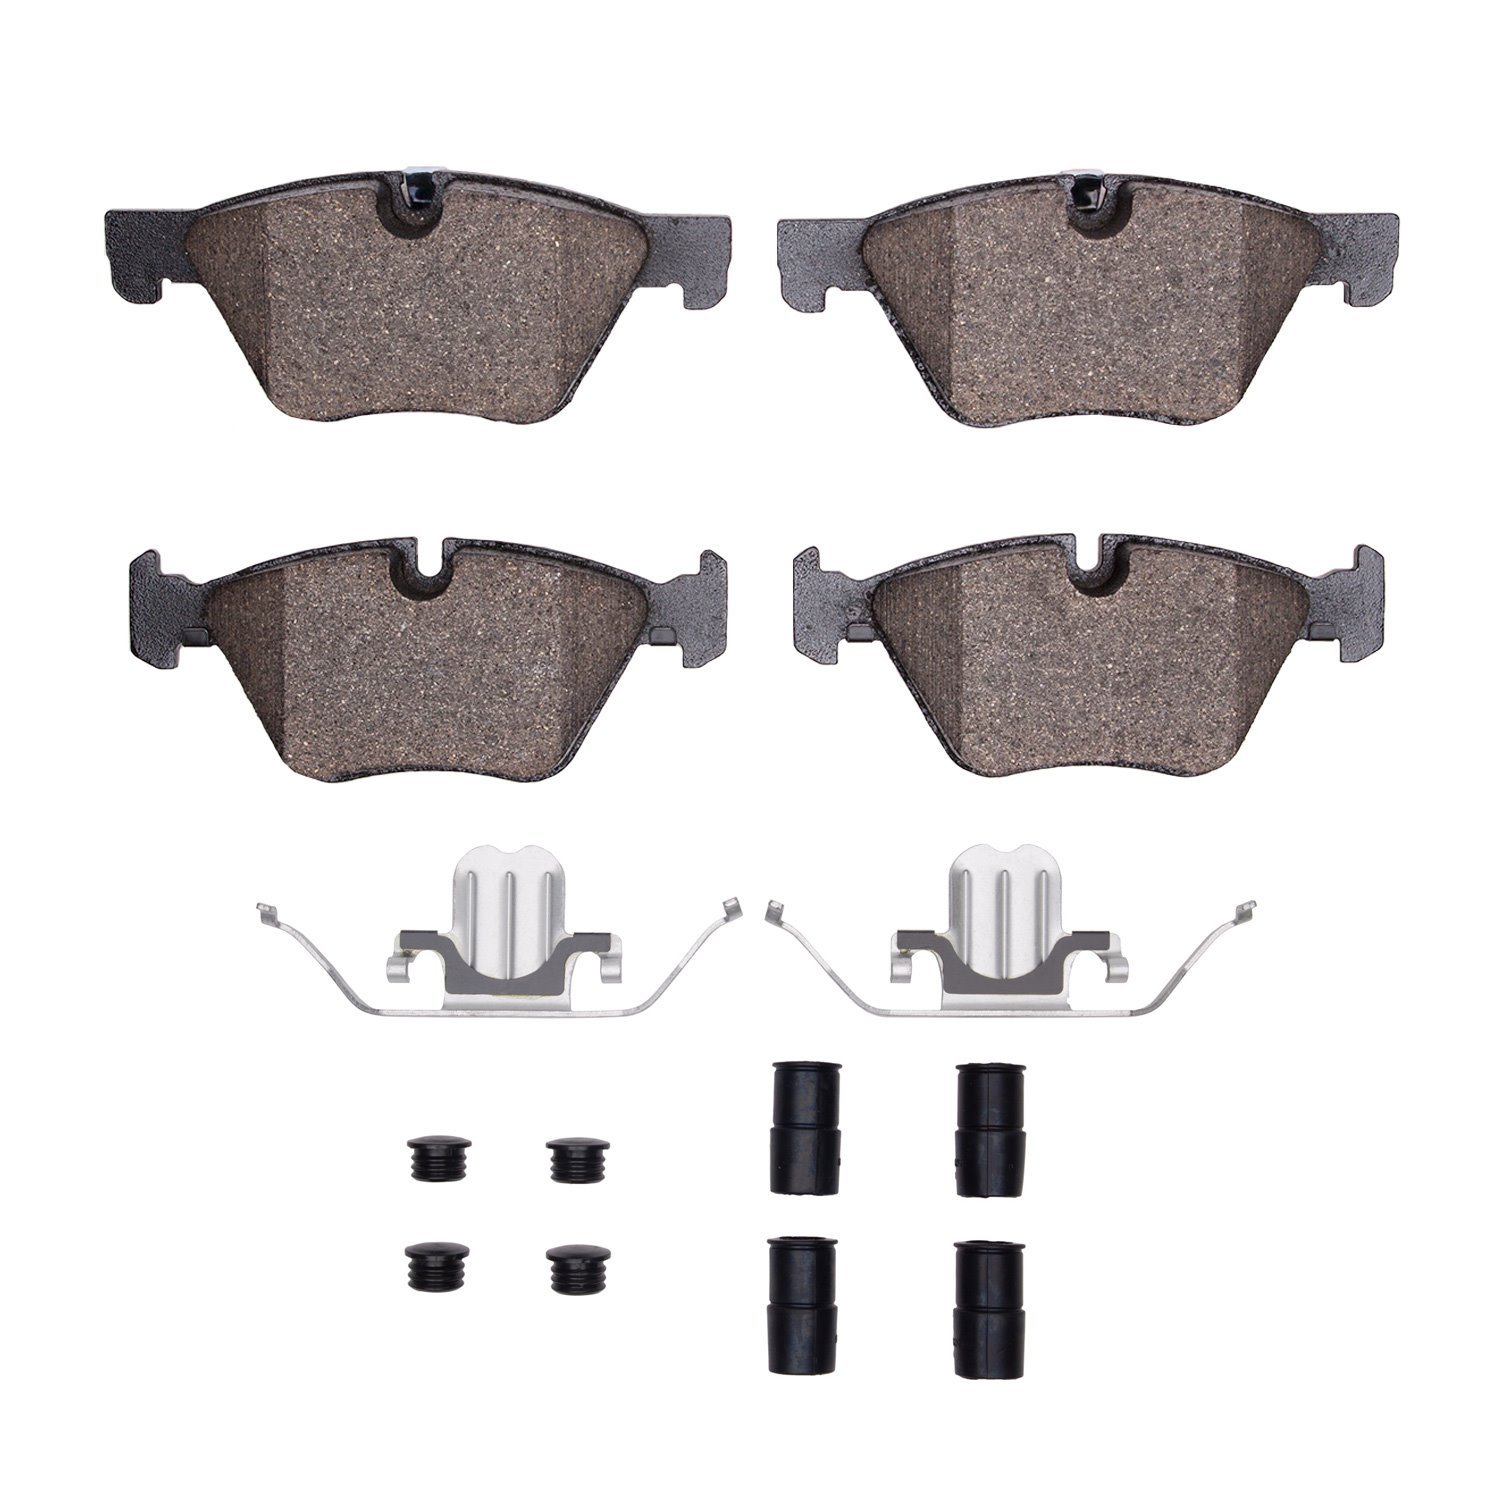 Ceramic Brake Pads & Hardware Kit, 2011-2016 BMW, Position: Front